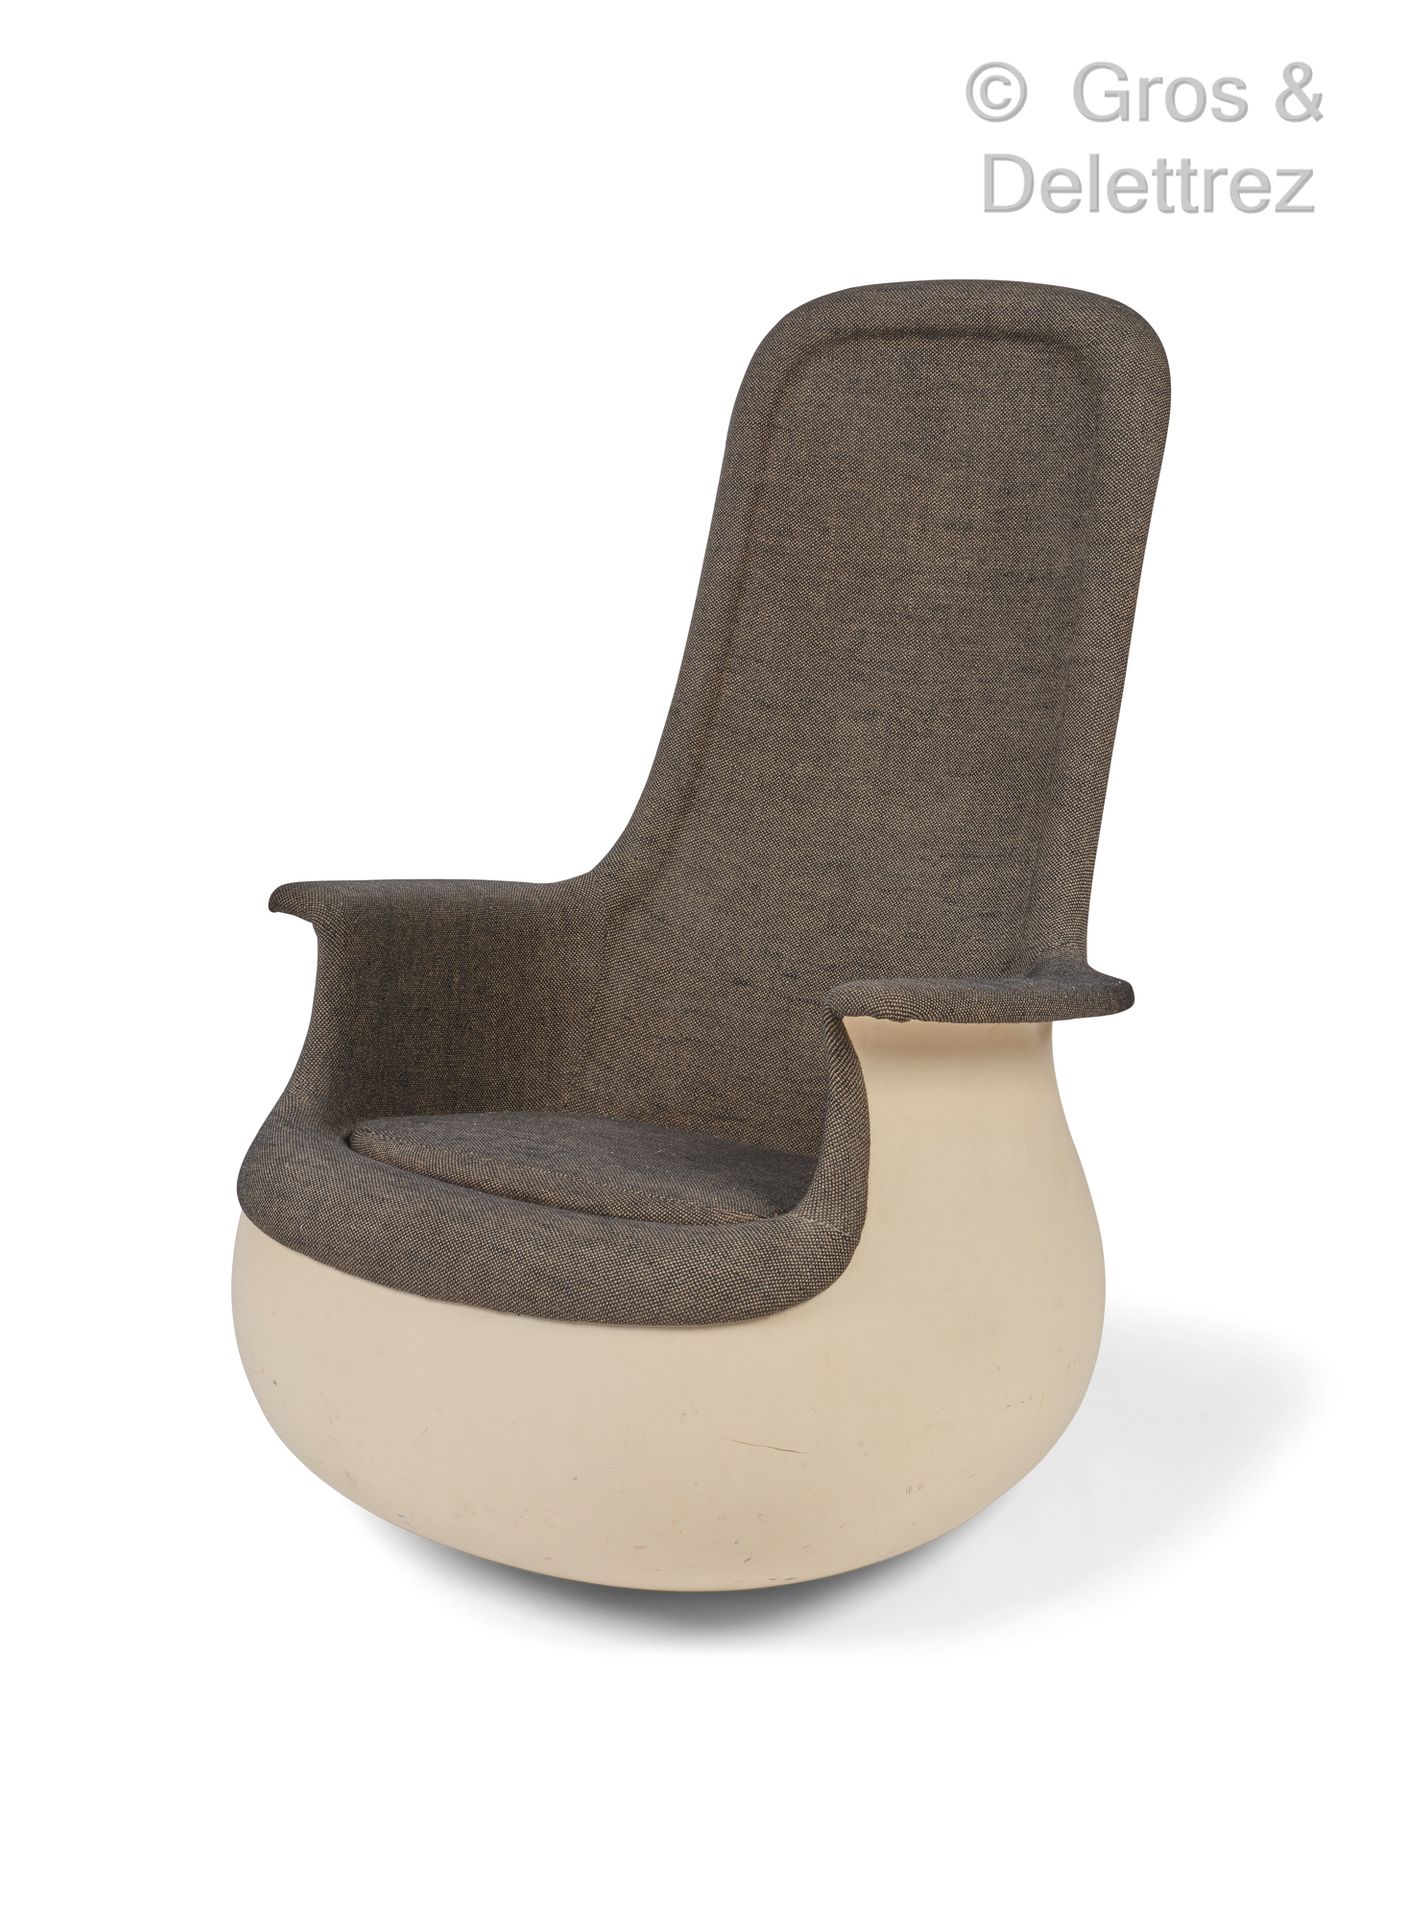 Marc HELD (Né en 1932) 扶手椅型号 "Grand Culbuto"，玻璃纤维和白色漆面聚酯，灰色织物装饰。

克诺尔国际版。

约1967&hellip;